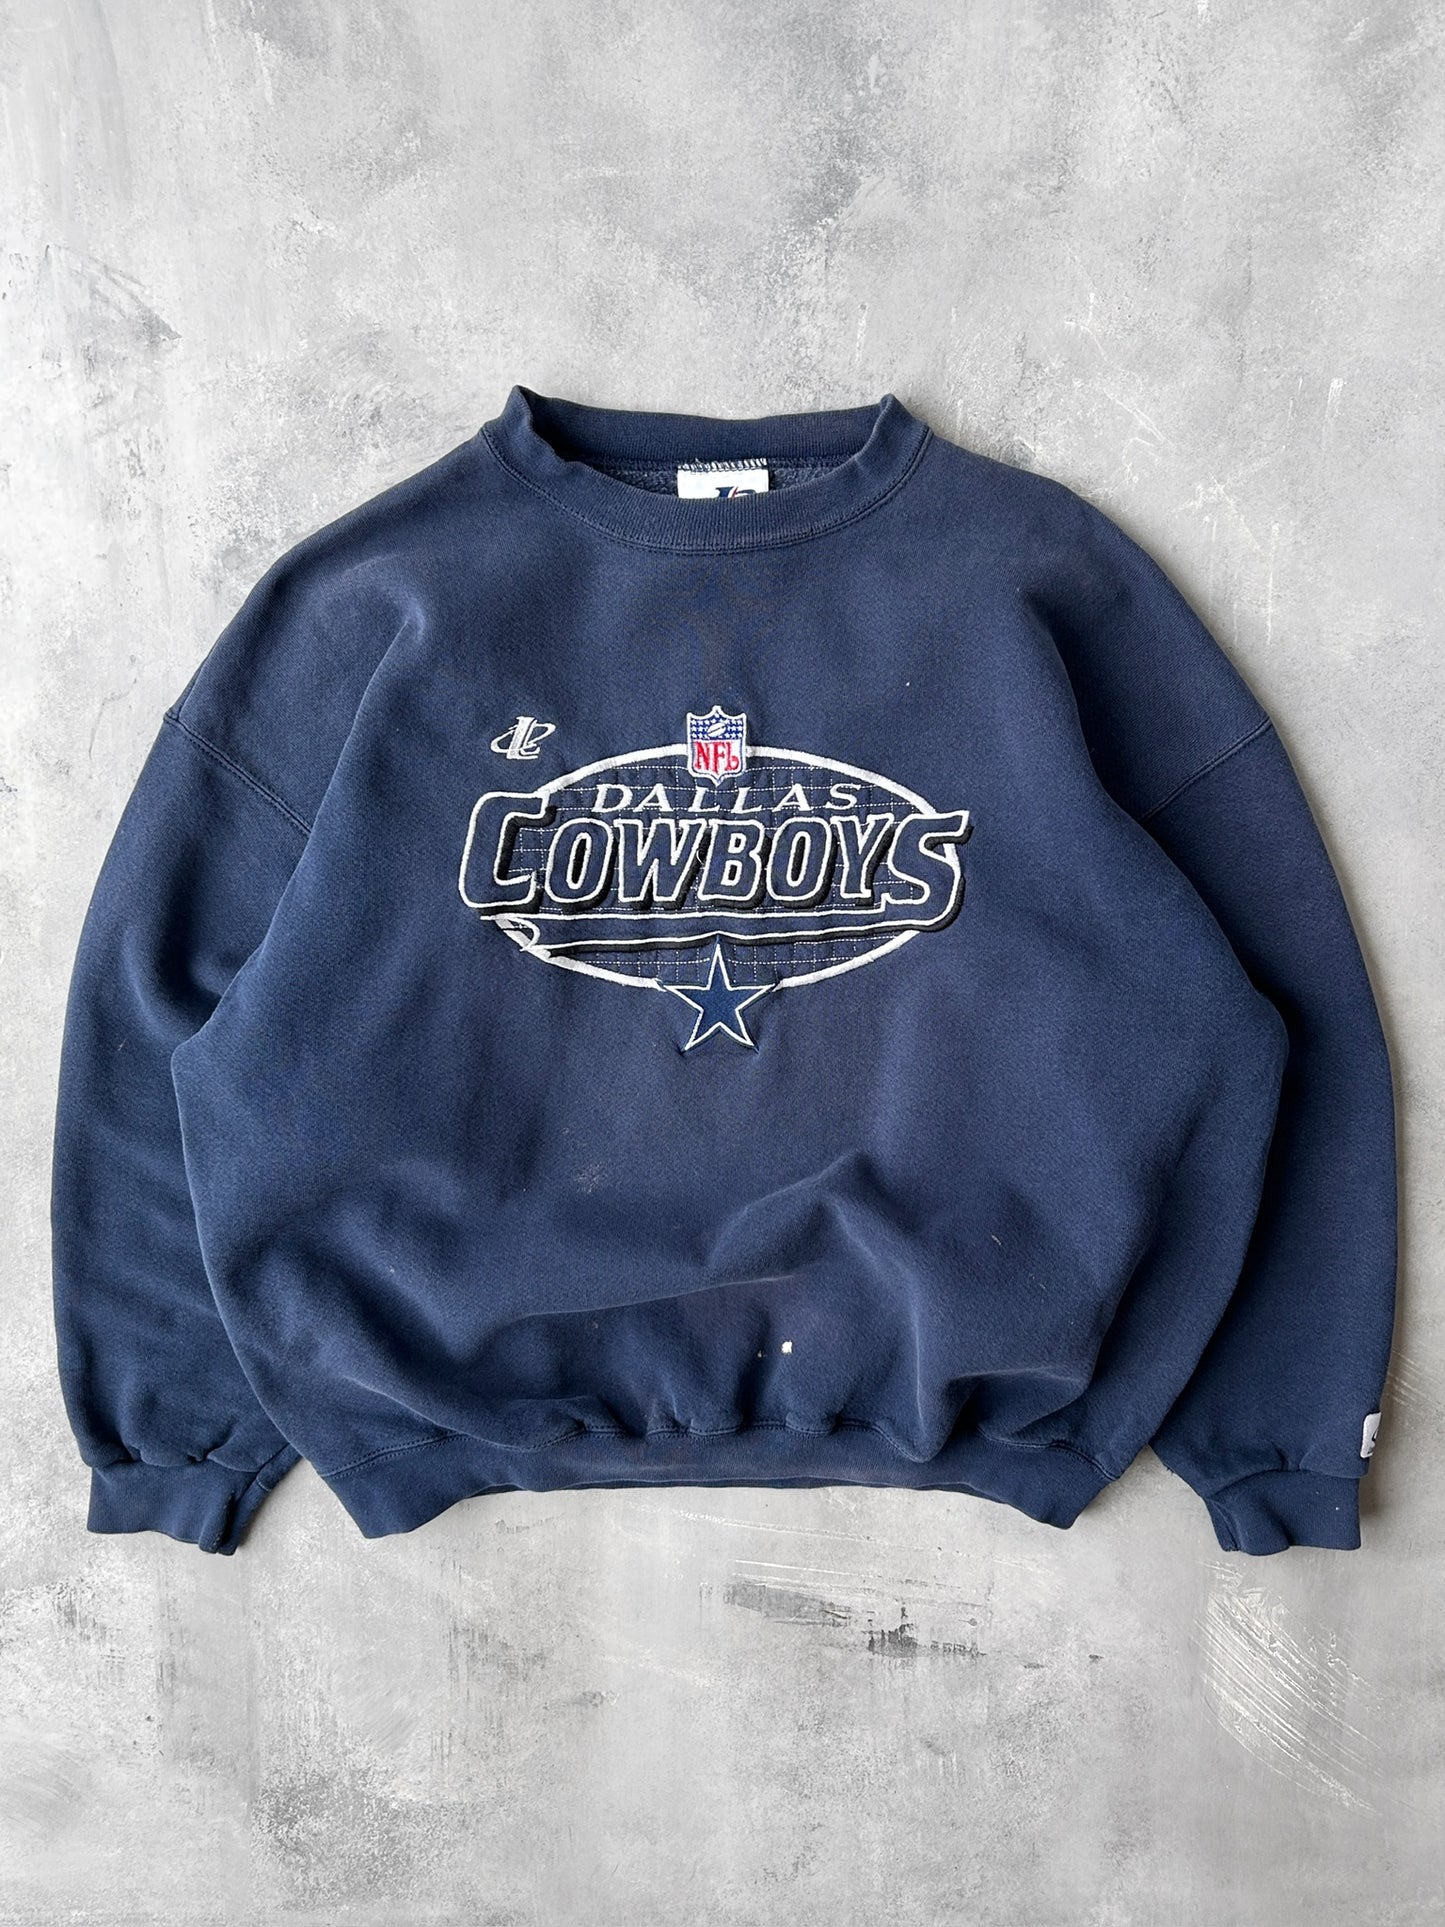 Dallas Cowboys Sweatshirt 90's - XL